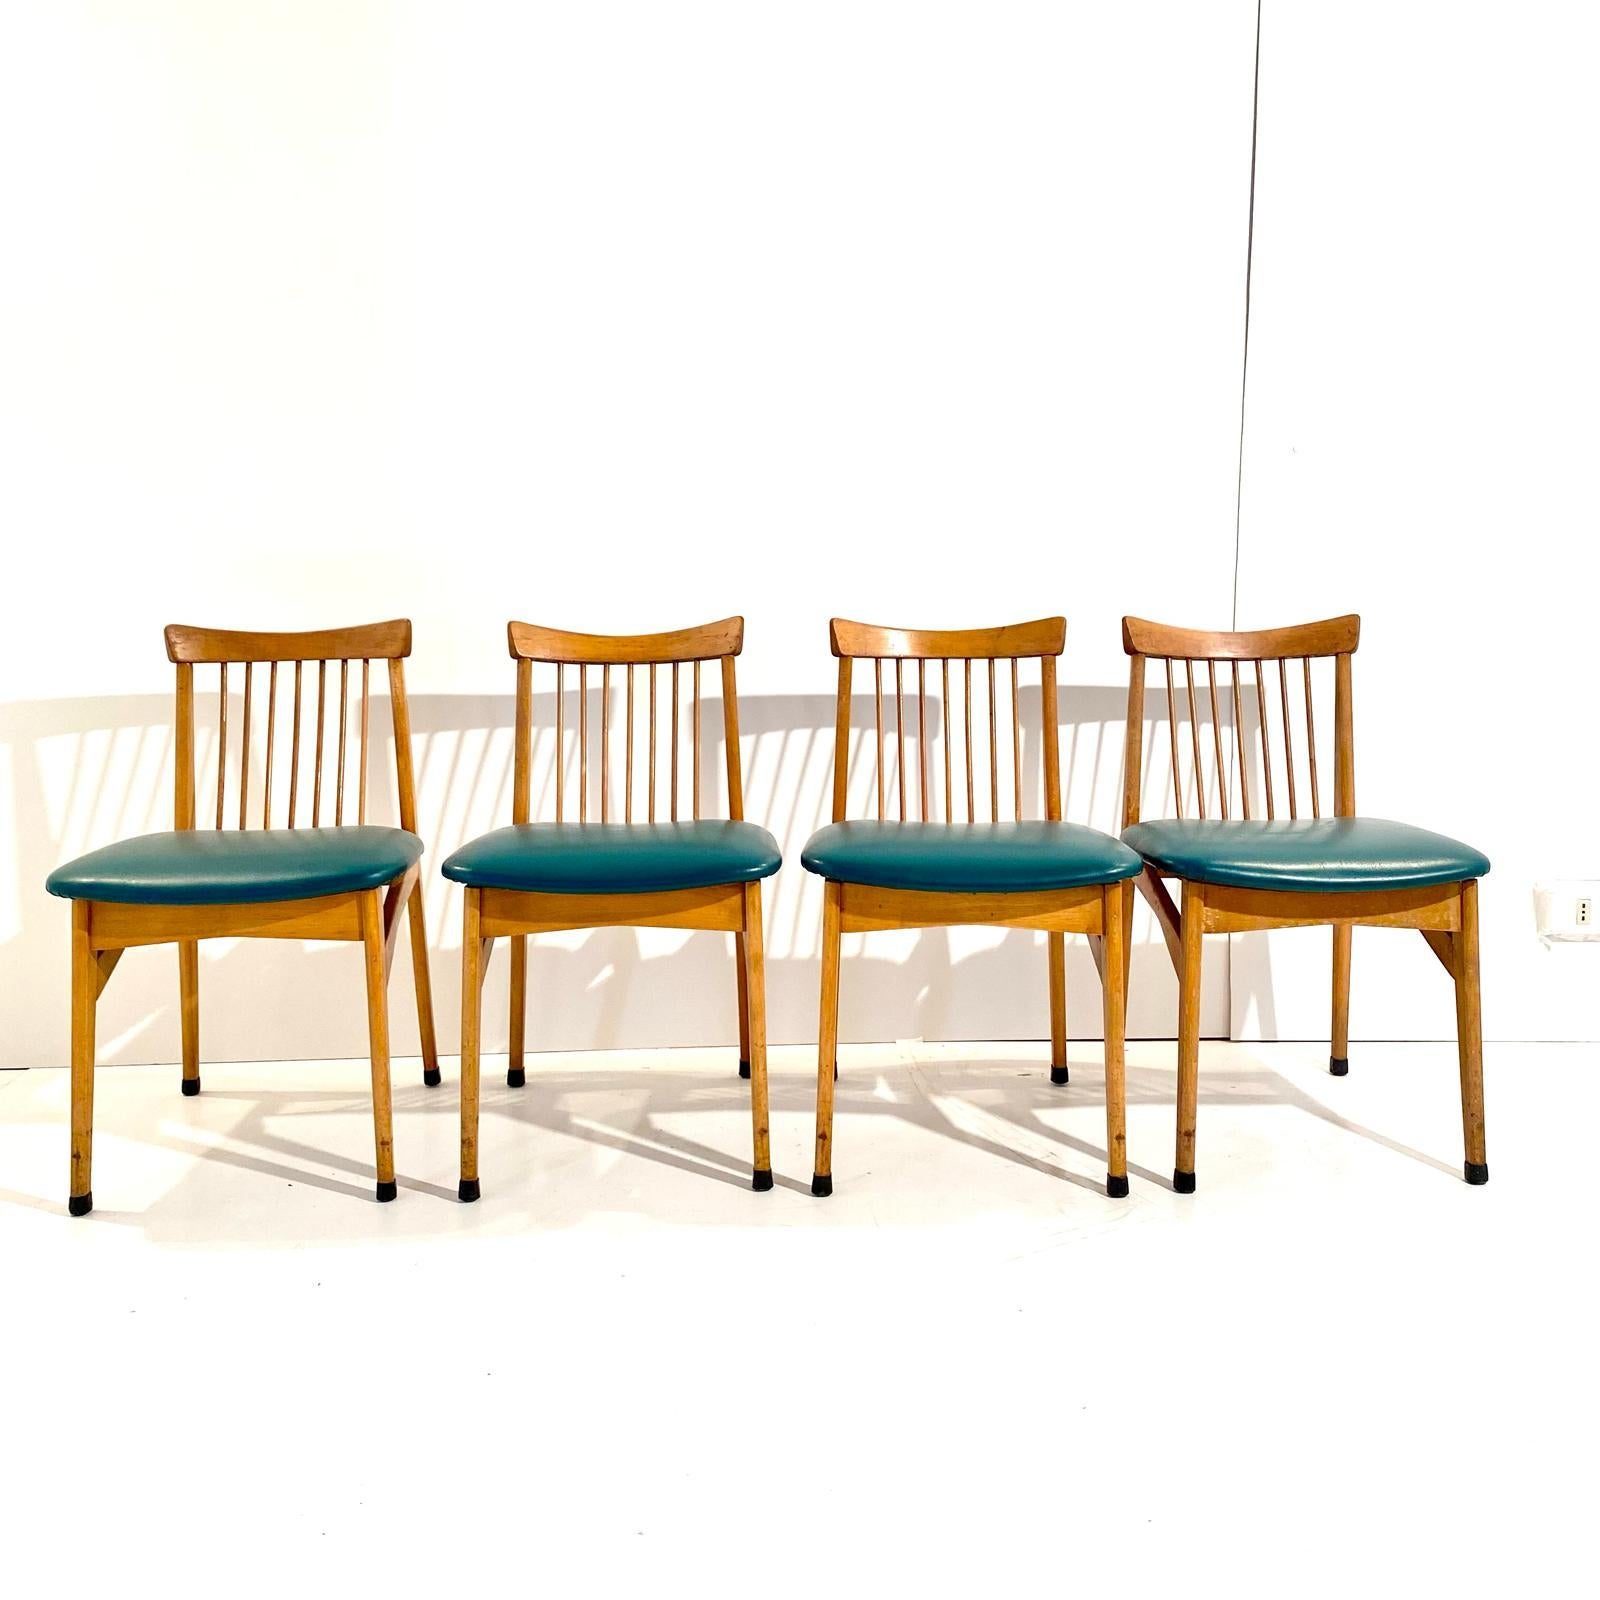 Chaises de salle à manger en bois vintage, ensemble de quatre, Italie années 1960.
Ensemble de quatre structures en bois de hêtre massif avec un beau dossier. Structure robuste en bois massif et faux cuir vert d'origine. Fabriqué en Italie dans les